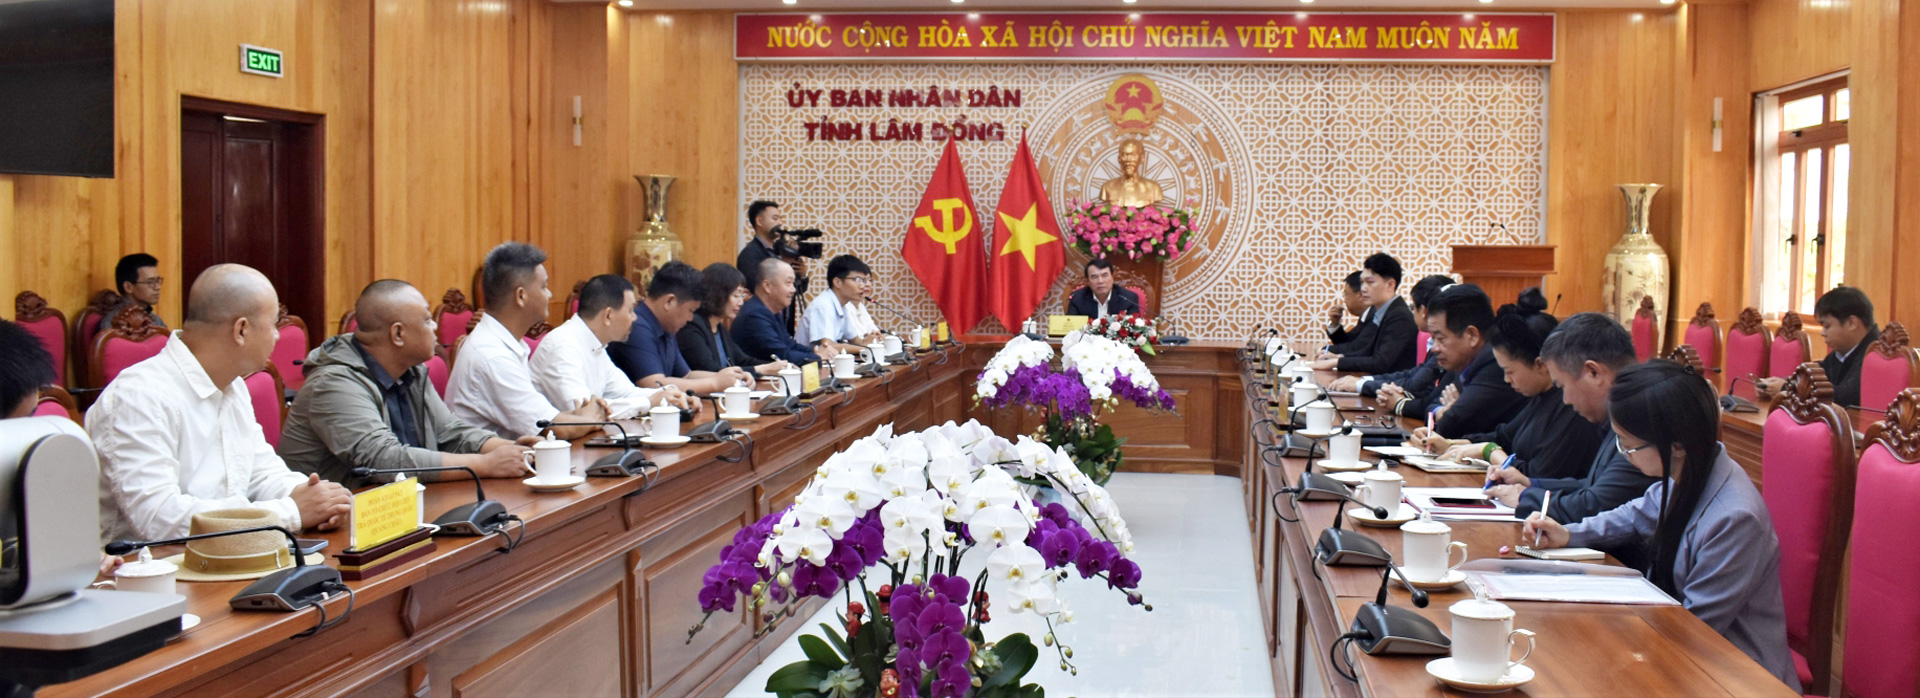 Quang cảnh buổi tiếp xã giao Đoàn Khảo sát của Ban Tổ chức Hội chợ Chè quốc tế Trung Quốc tại UBND tỉnh Lâm Đồng